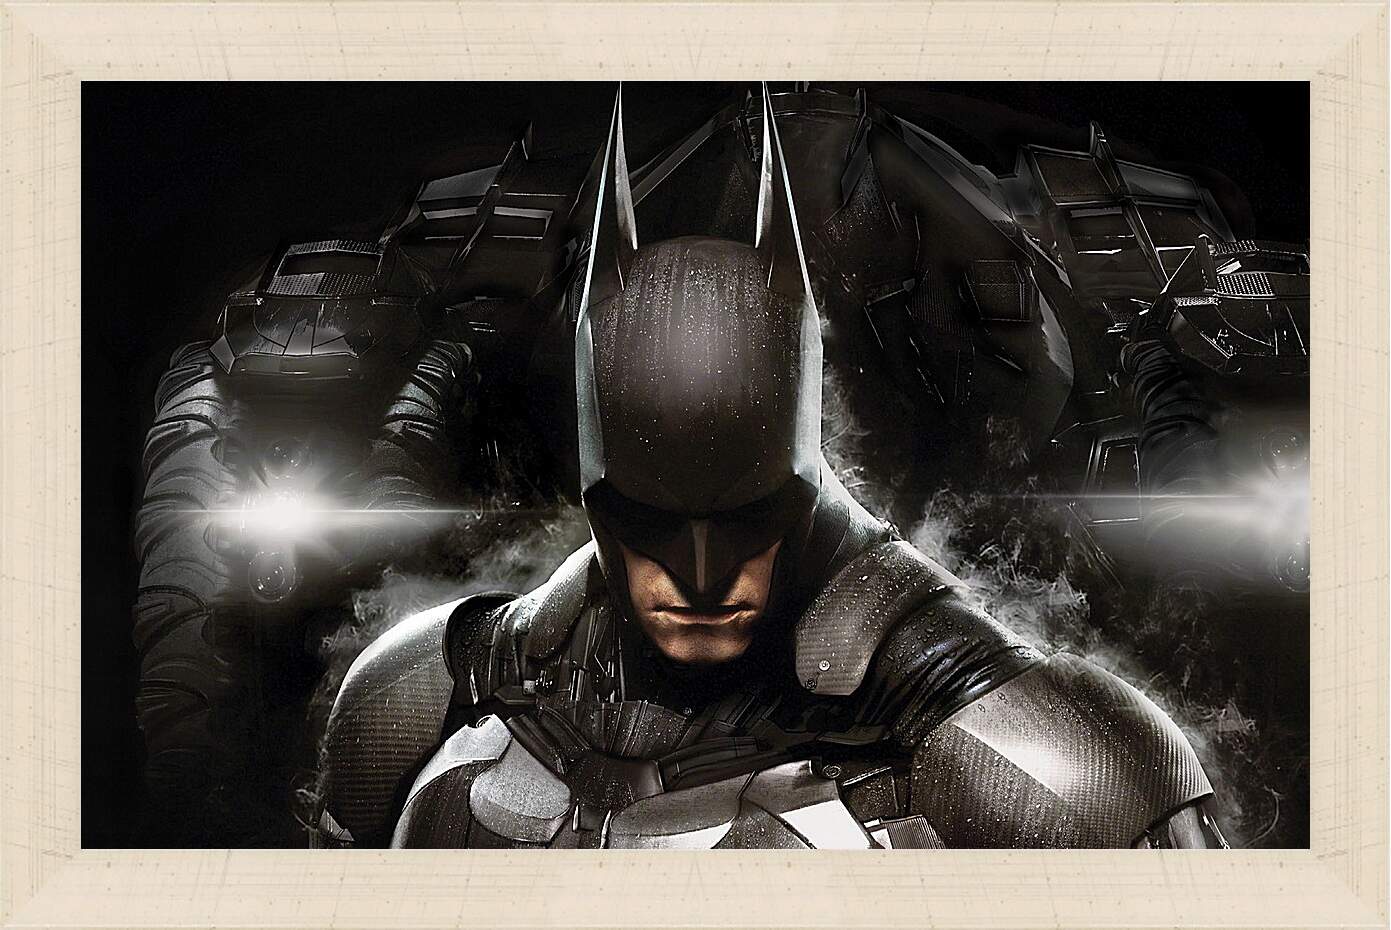 Картина в раме - Batman: Arkham Knight